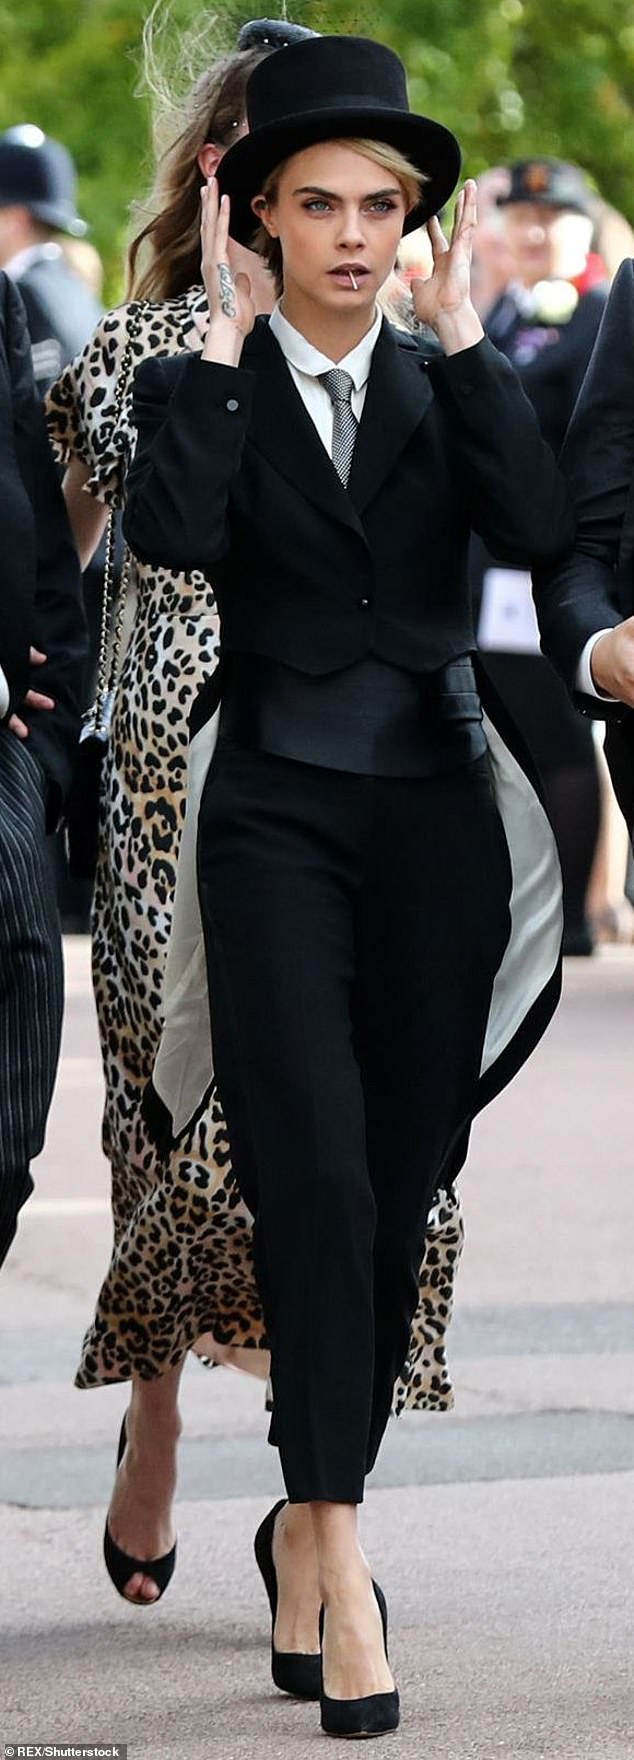 كارا ديليفين، التي تمت دعوتها لحضور حفل زفاف الأميرة يوجيني في عام 2018، أذهلت العروس الملكية تمامًا من خلال ظهورها بقبعة عالية وذيول